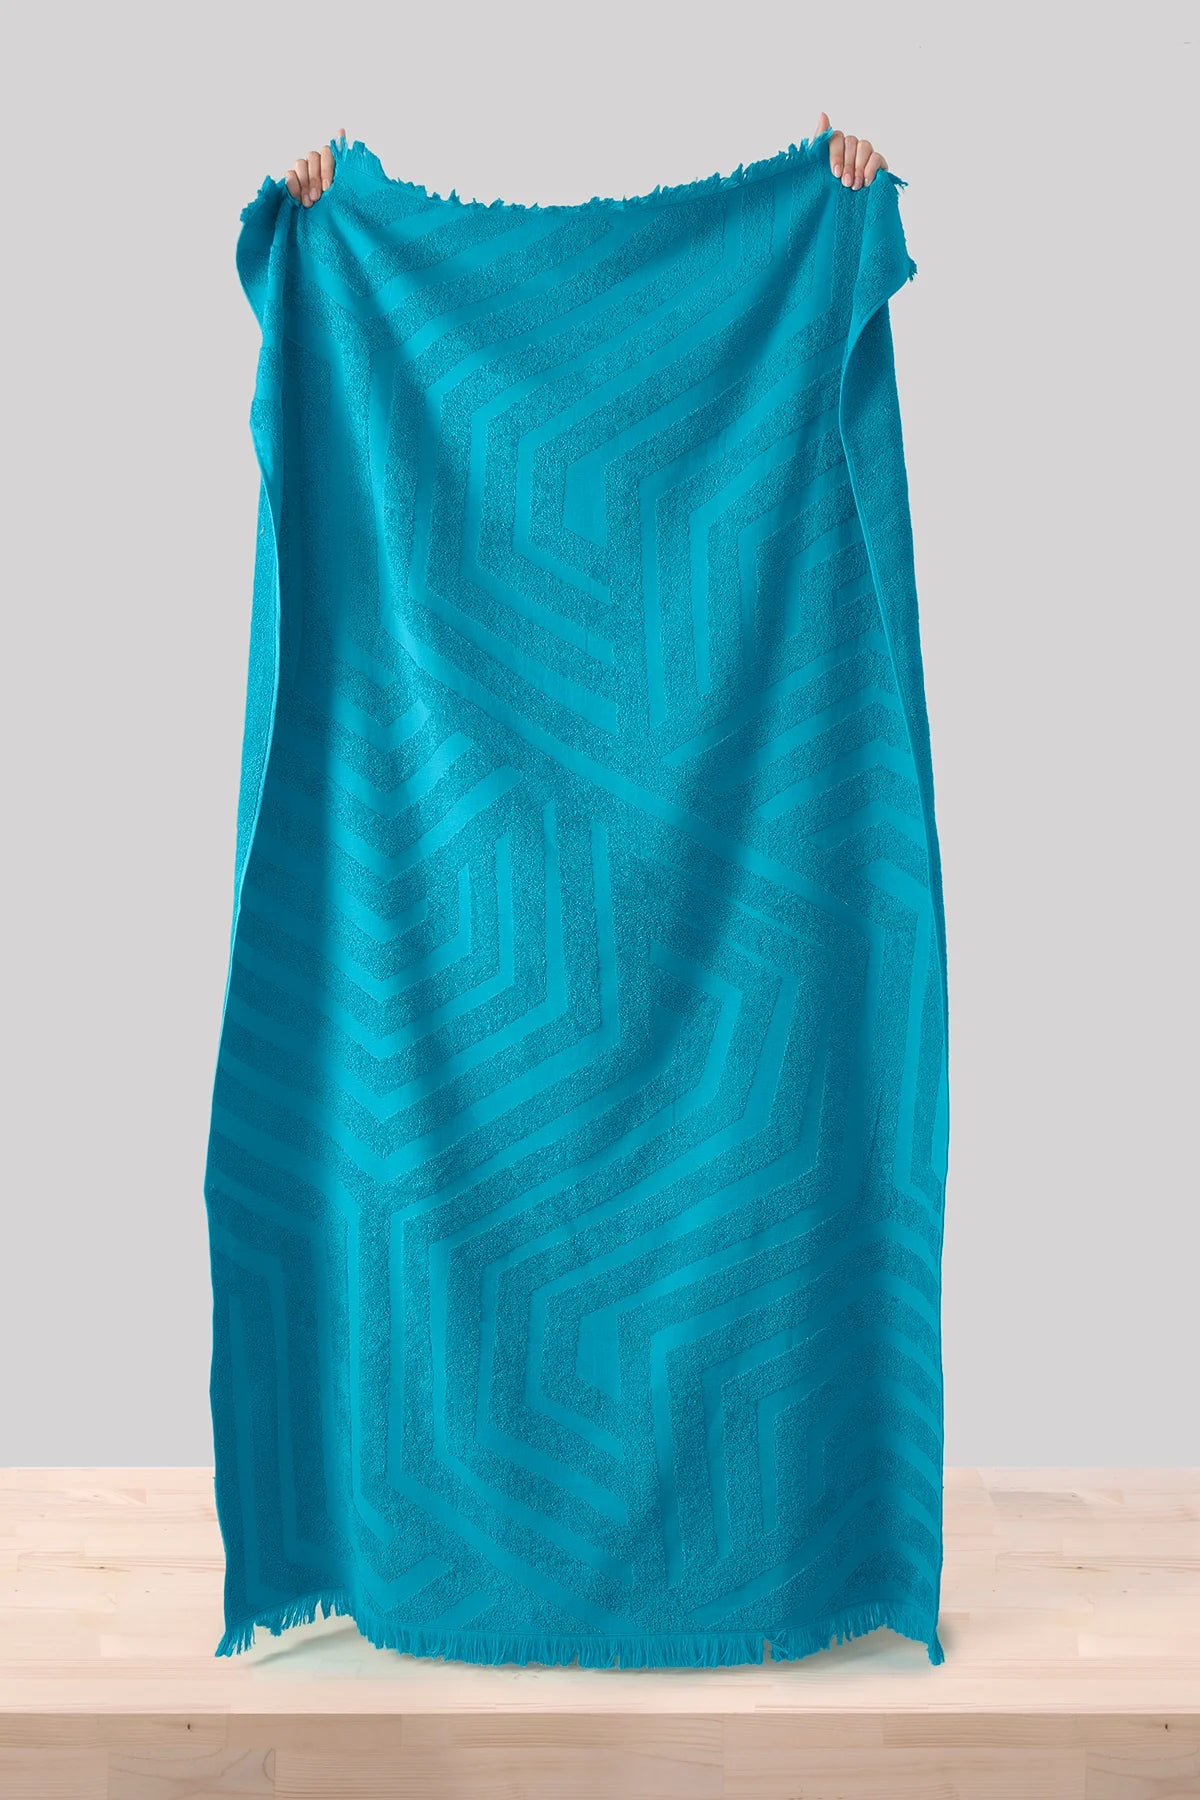 Ceu Deep - New Summer Trend 100x180cm. Premium Beach Towel